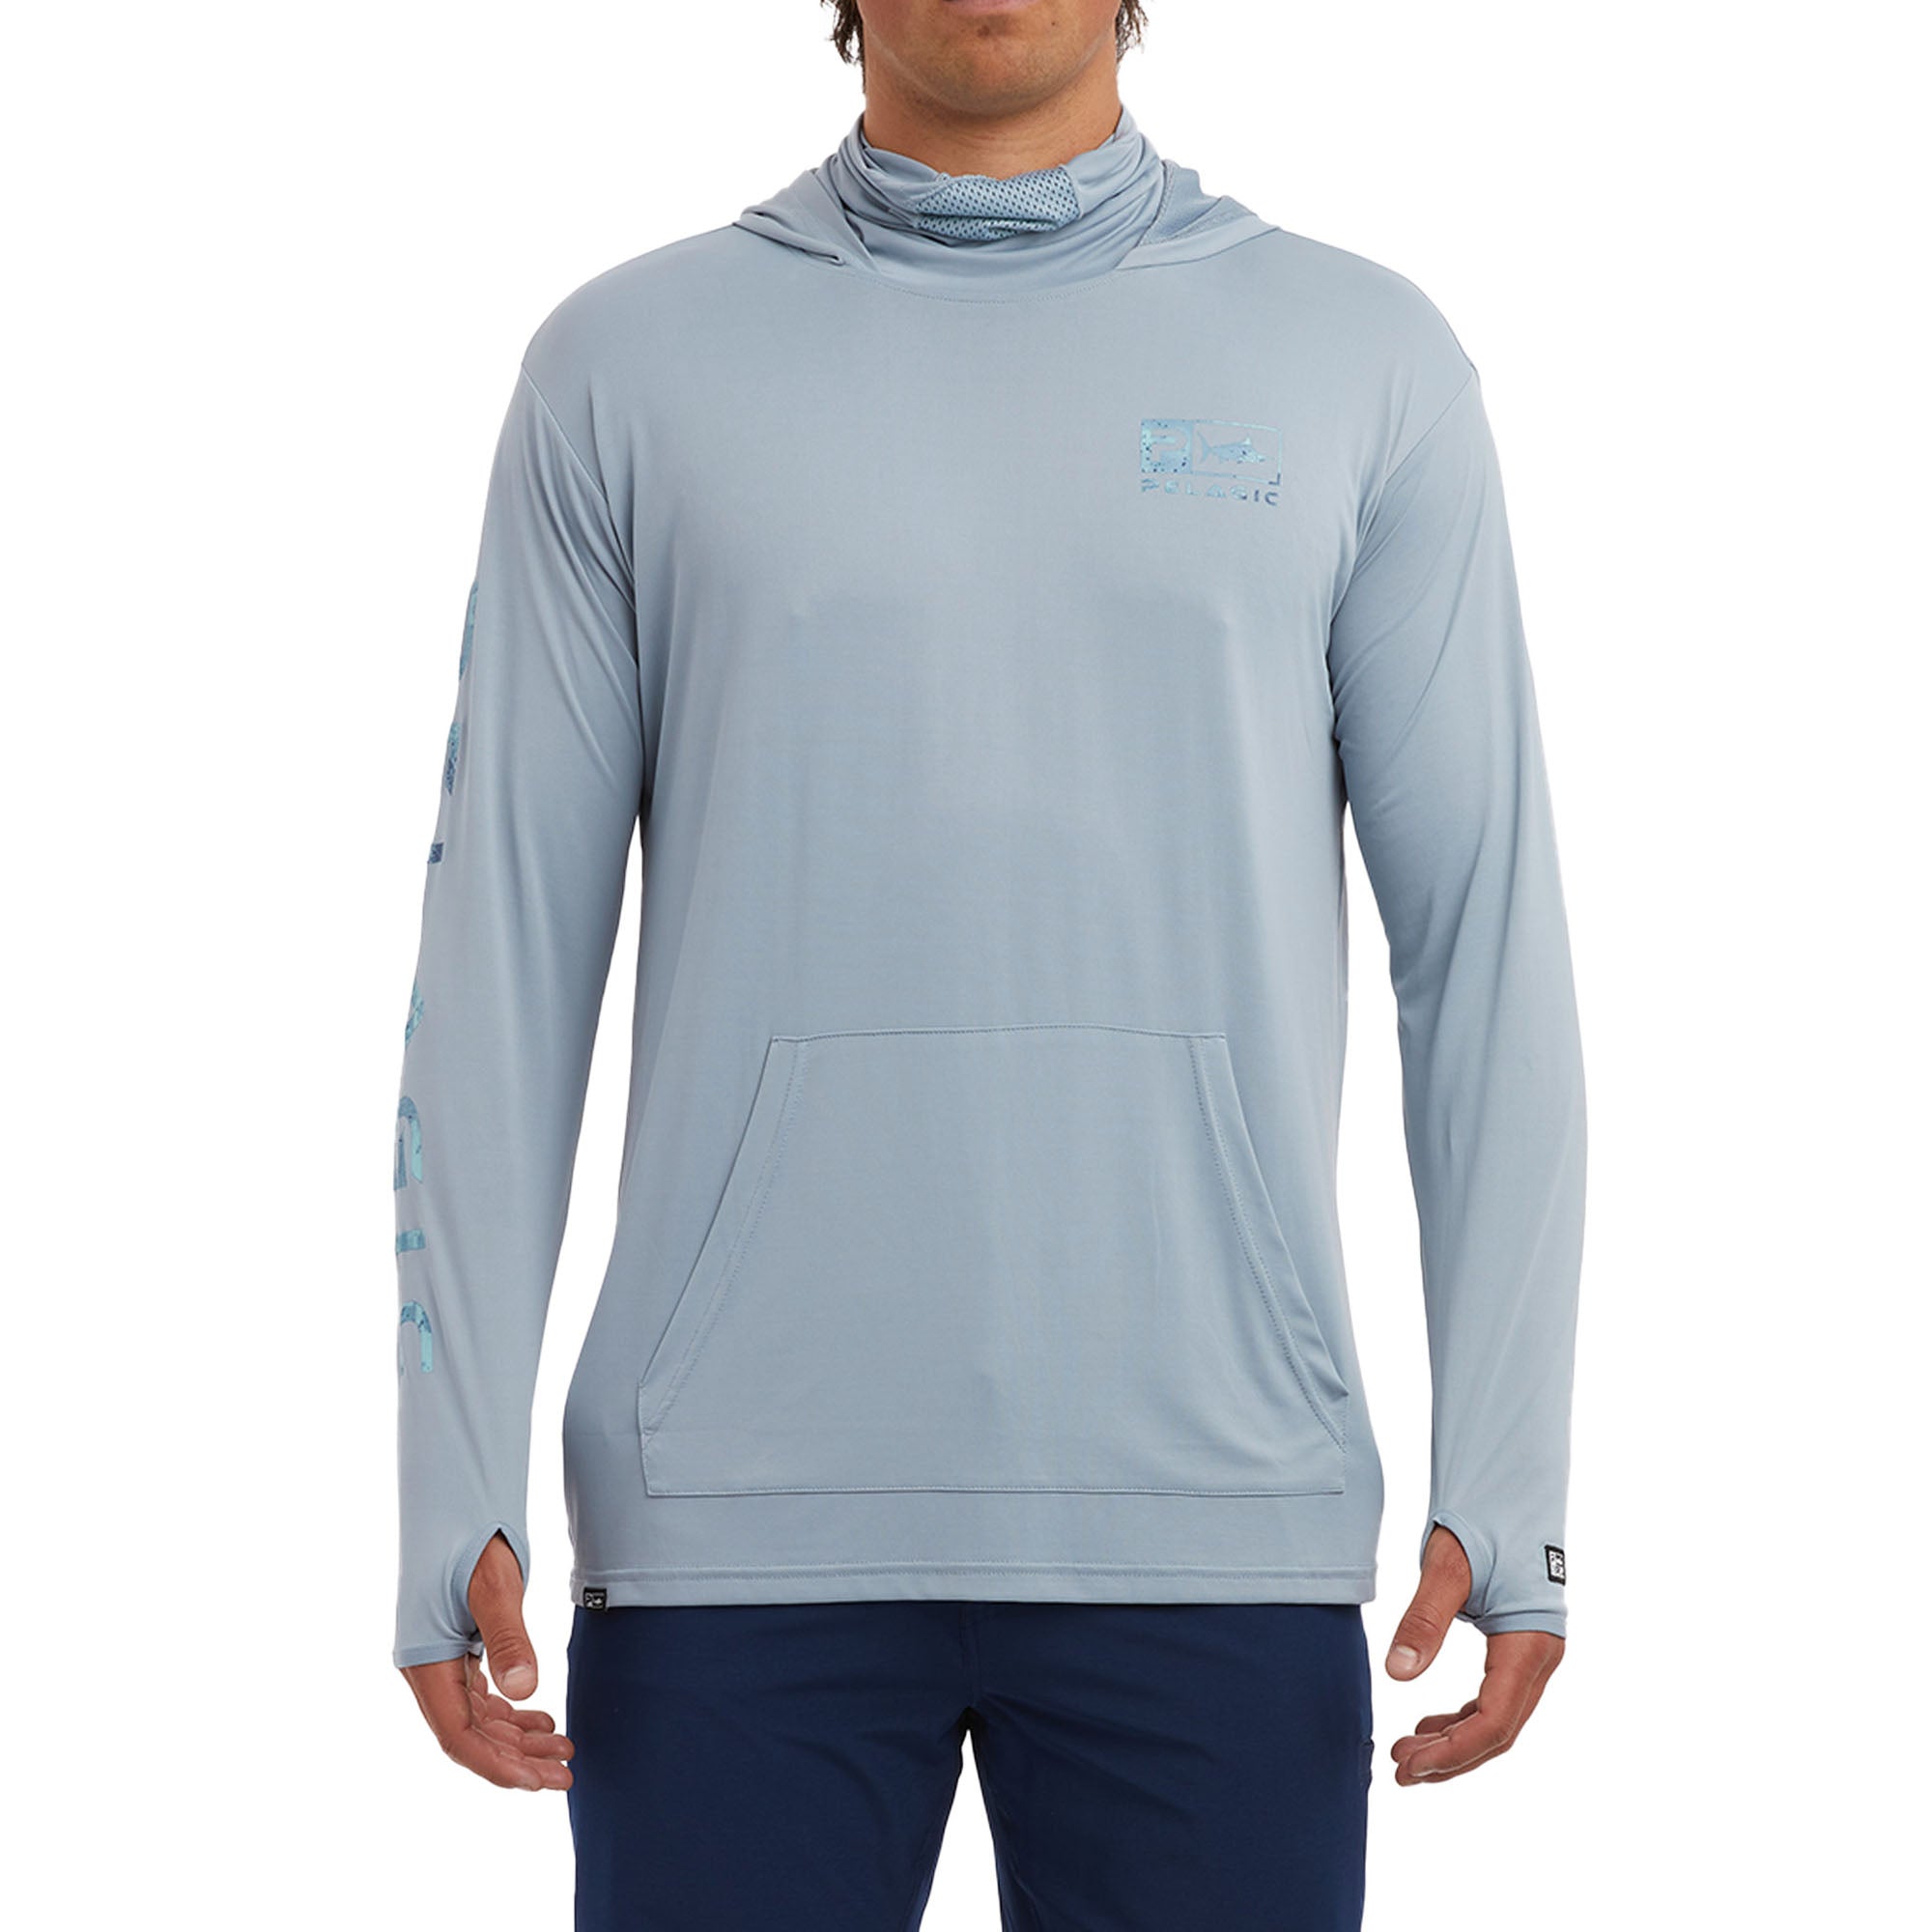 Pelagic Defcon Icon Hooded Fishing Shirt Slate / XL